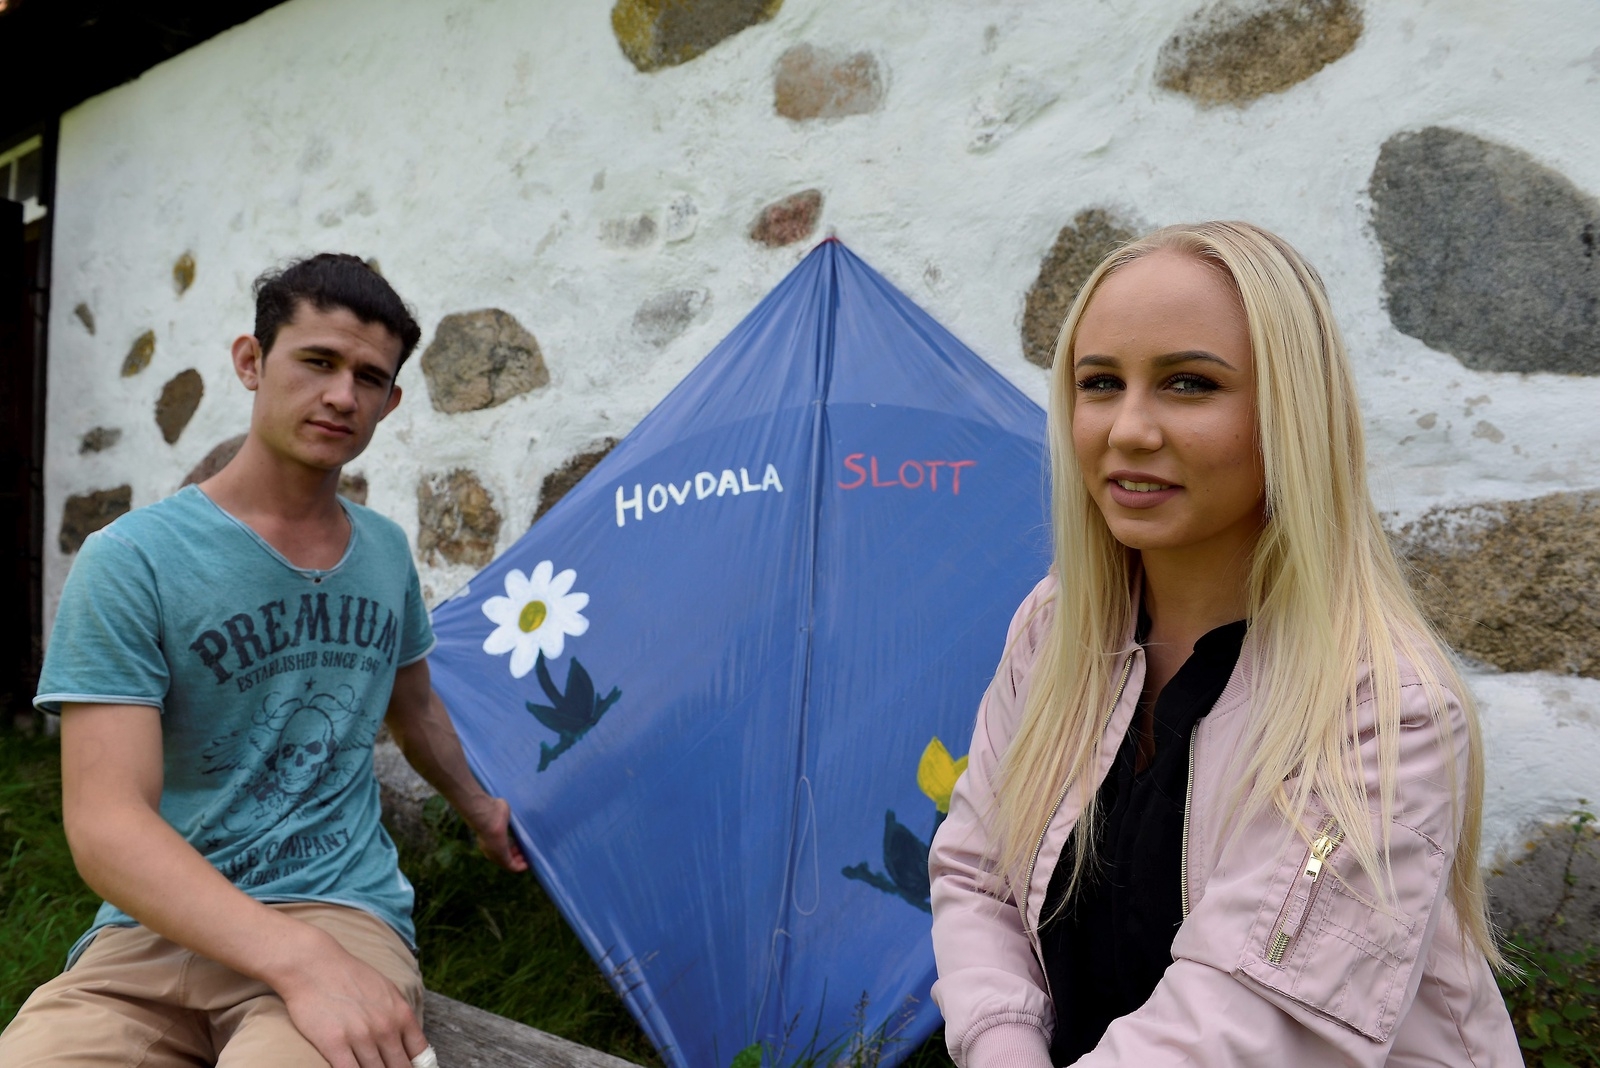 Hovdala har fått en egen drake, den har varit Alishefa och Cornelia Zettermans gemensamma projekt. Foto: Eva Frid